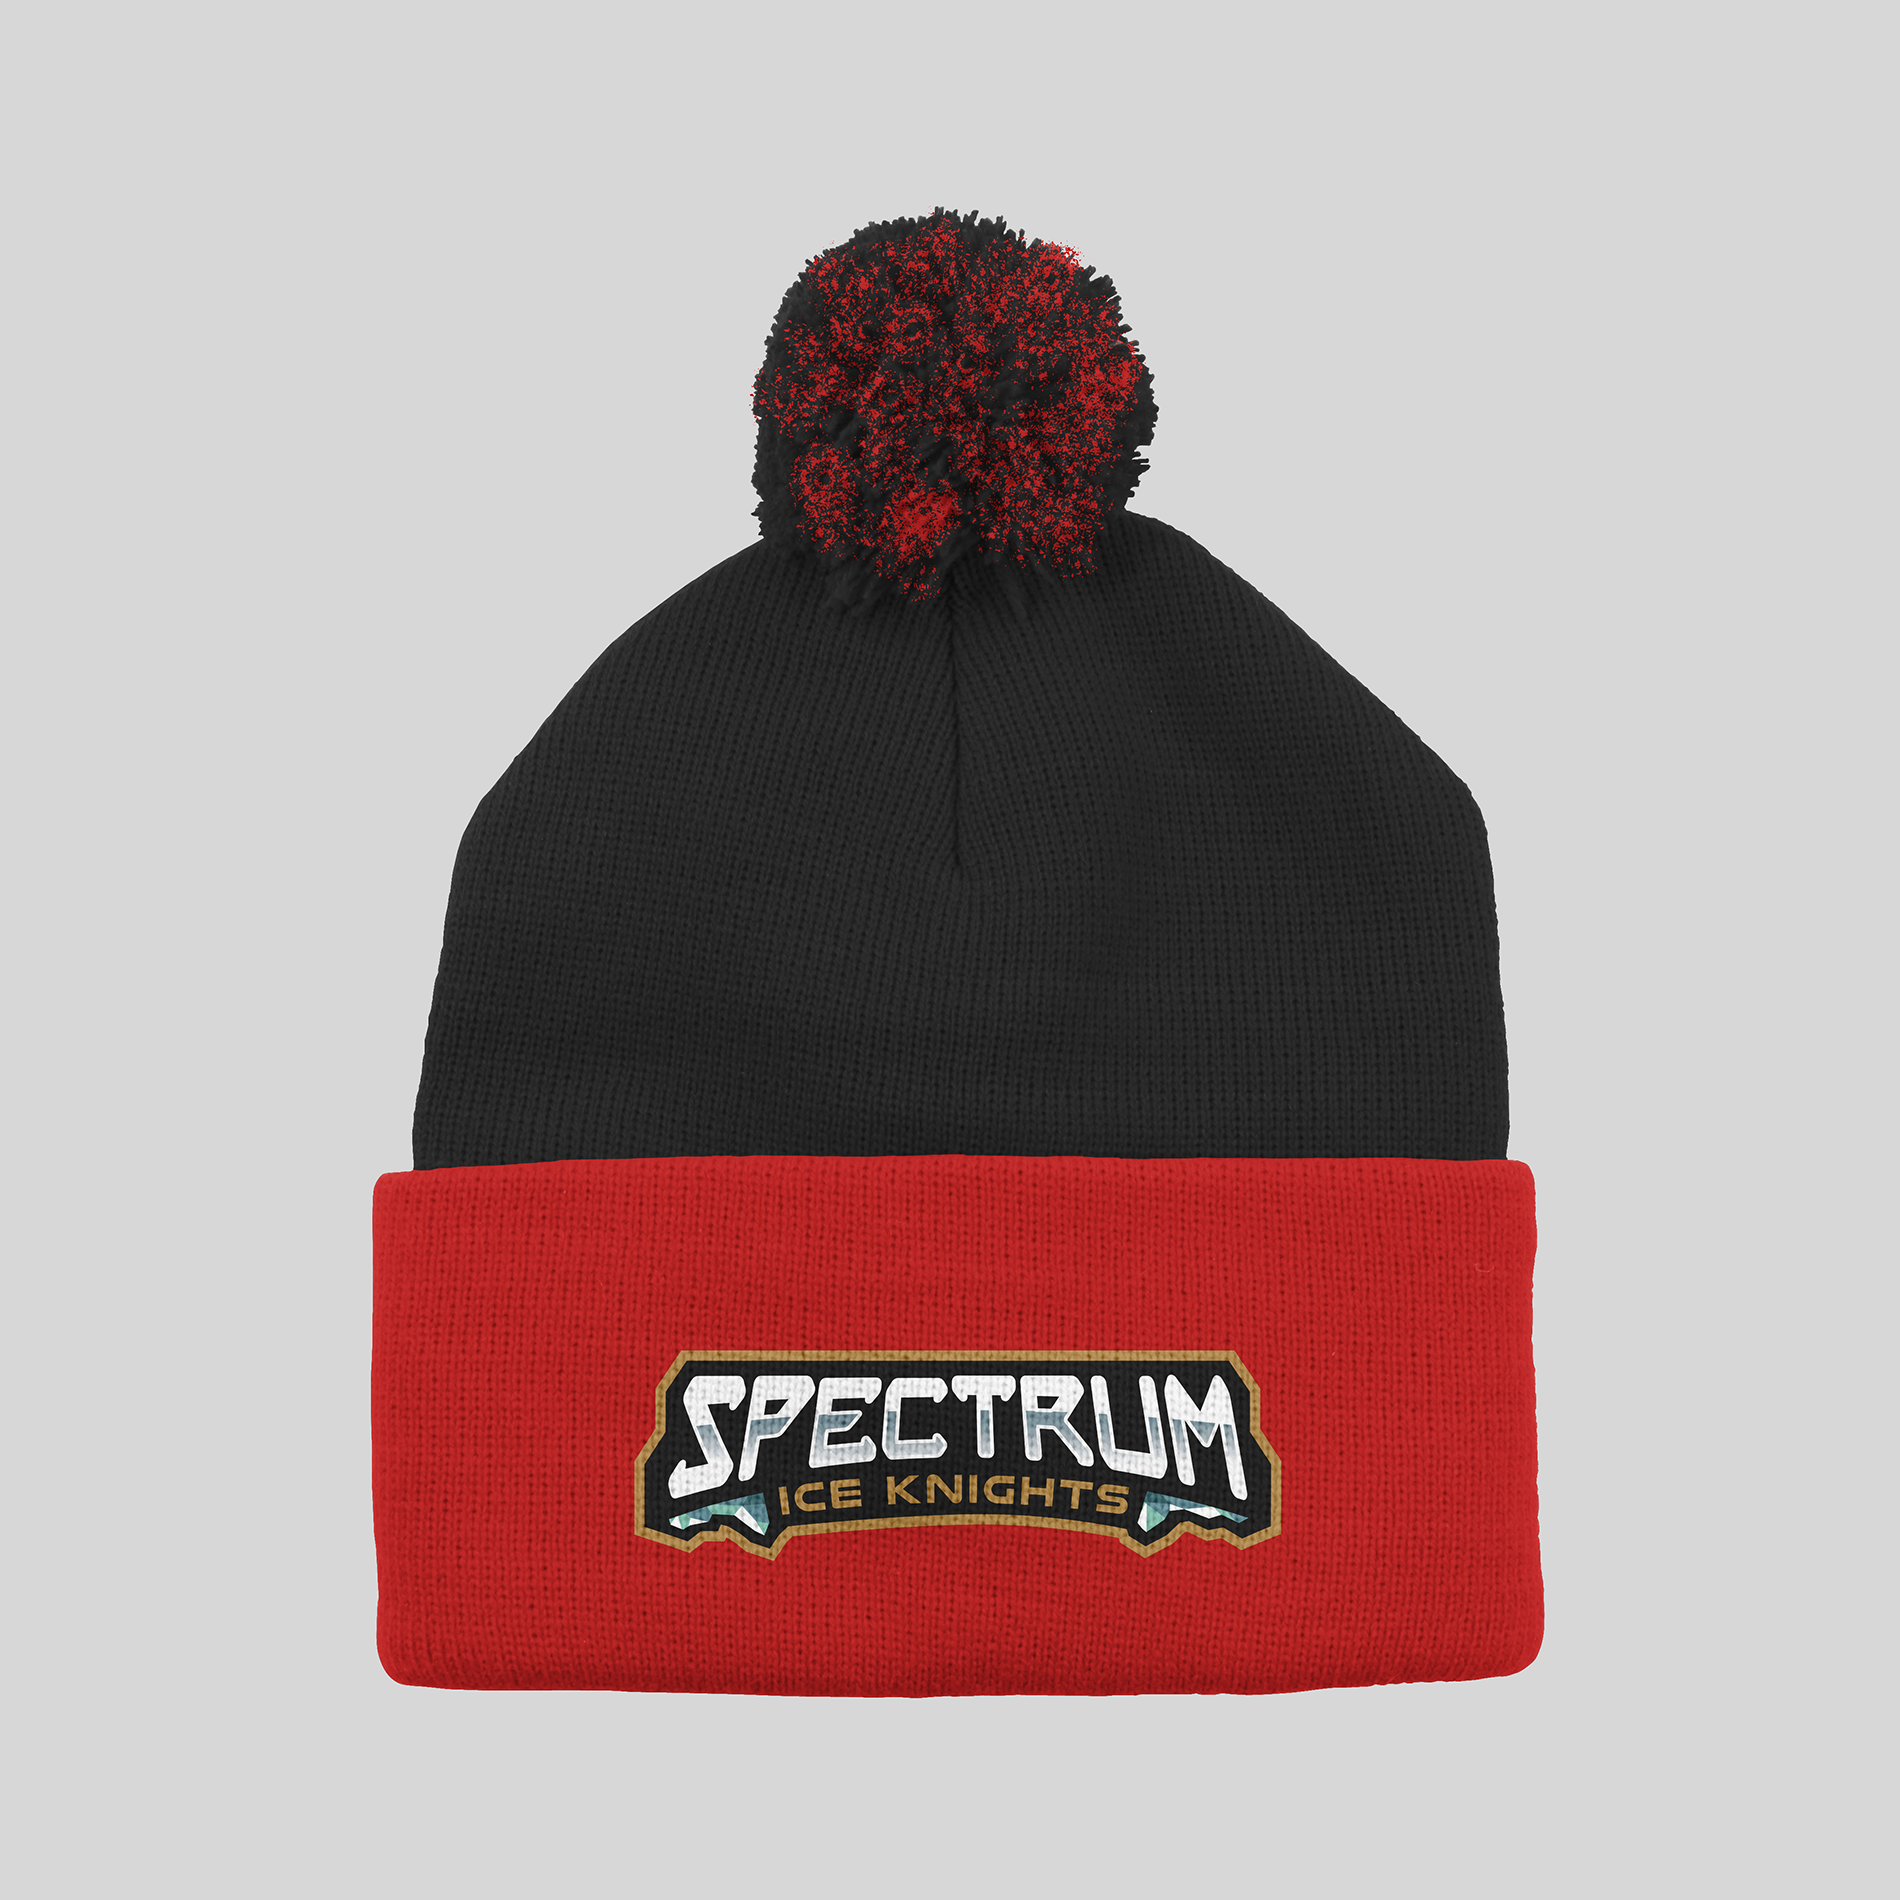 Spectrum Ice Knights Pom Hat - Redwolf Jersey Works